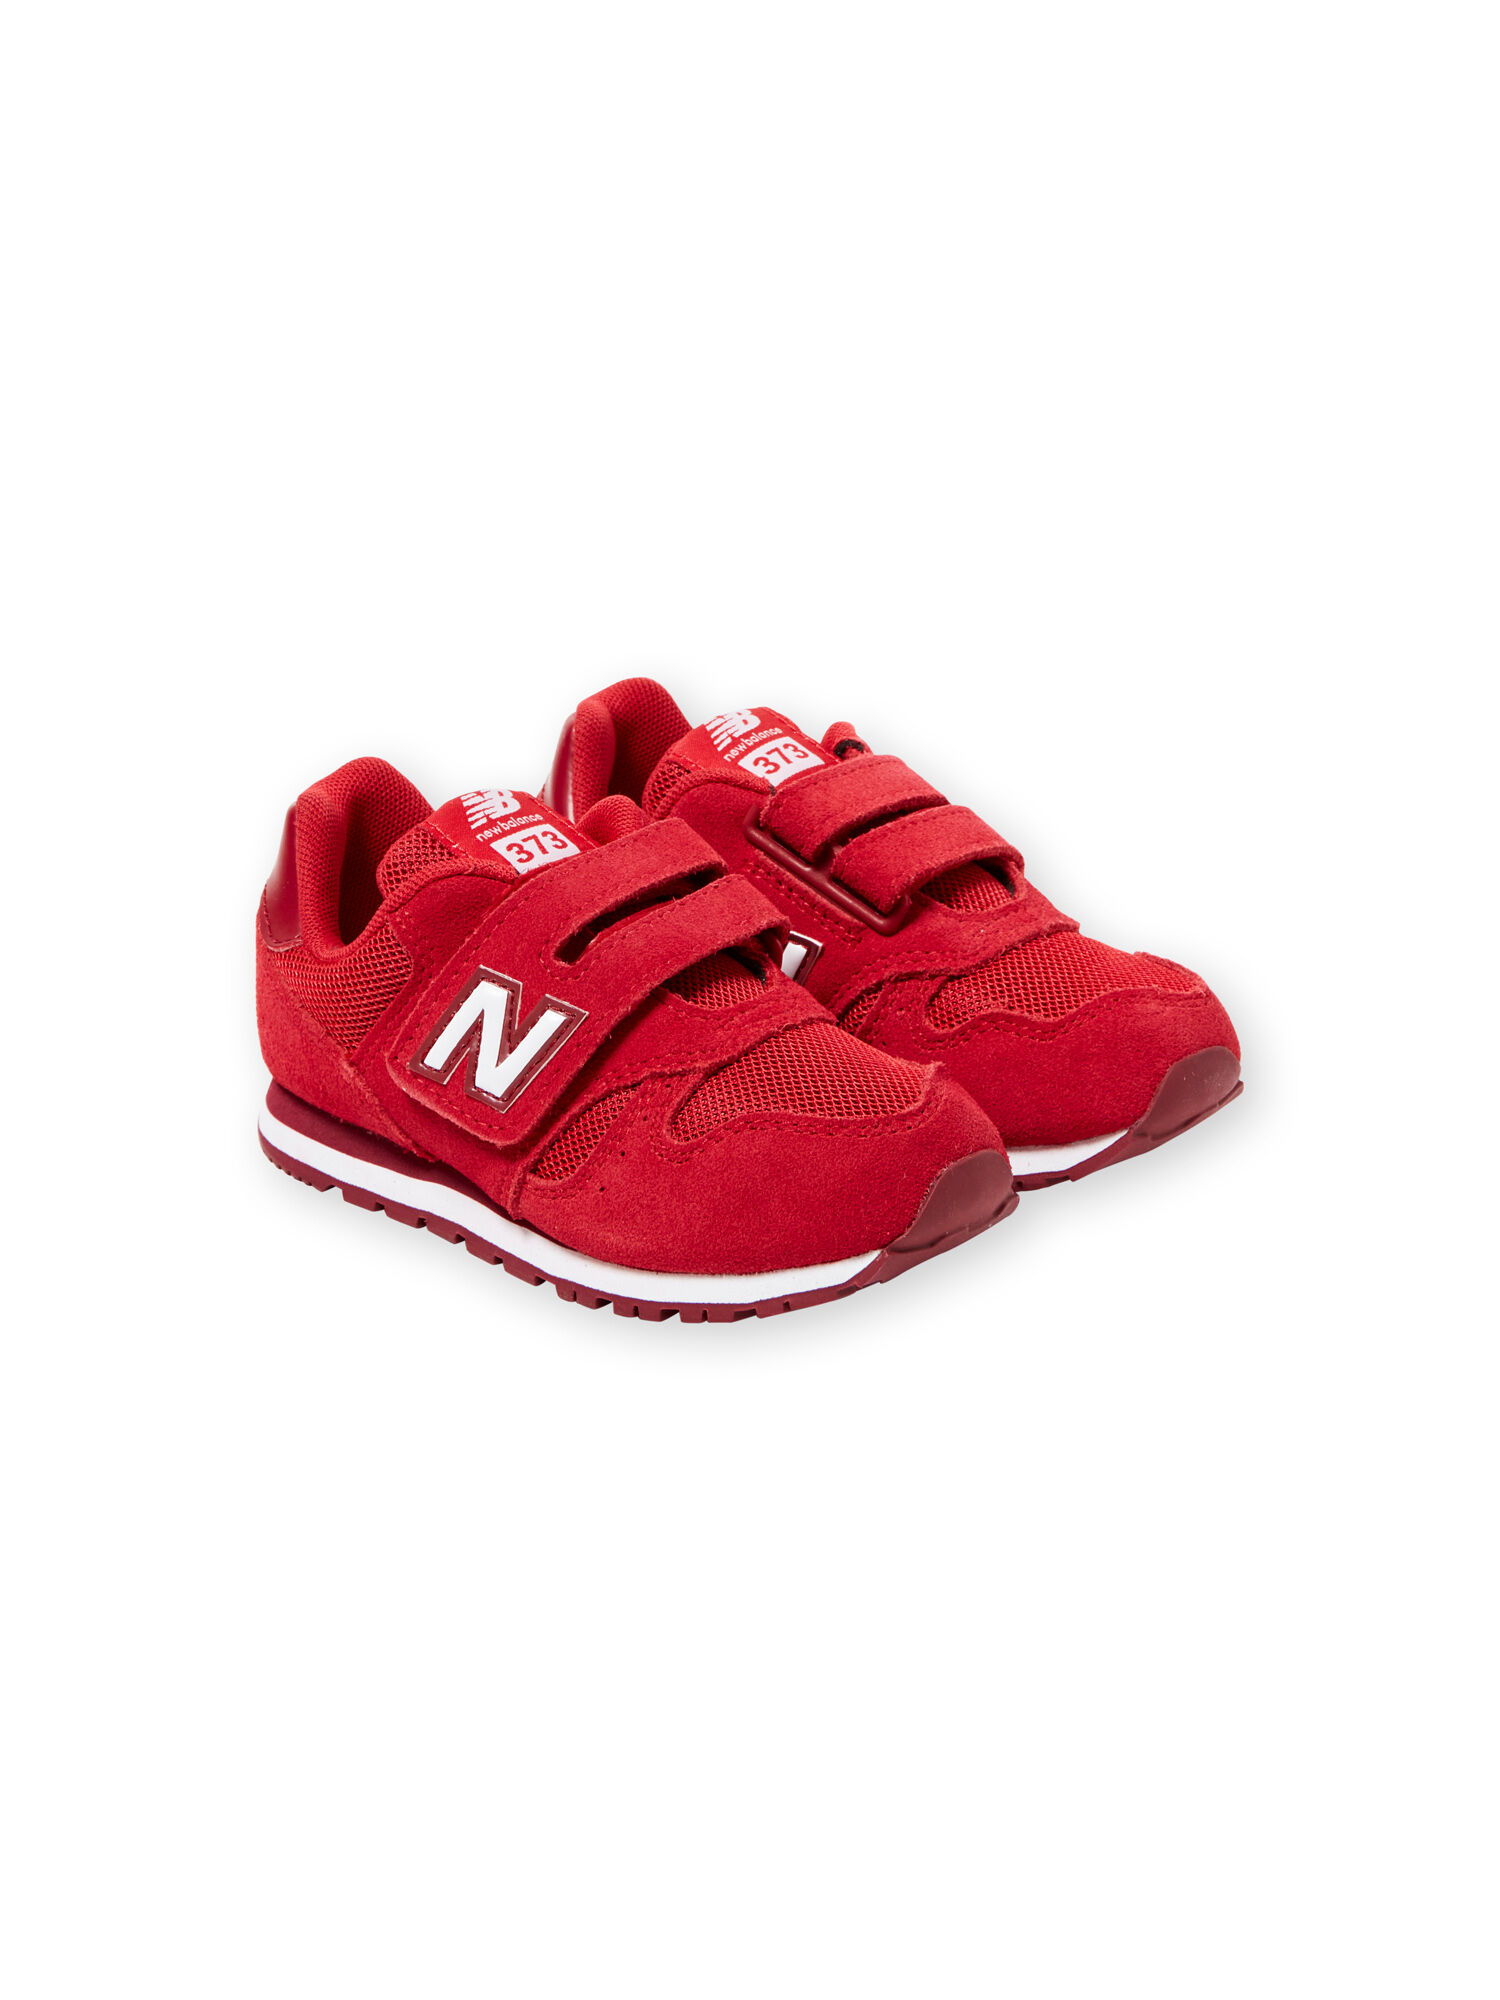 Zapatillas New Balance de color rojo para niño صيدلية توصيل مجاني